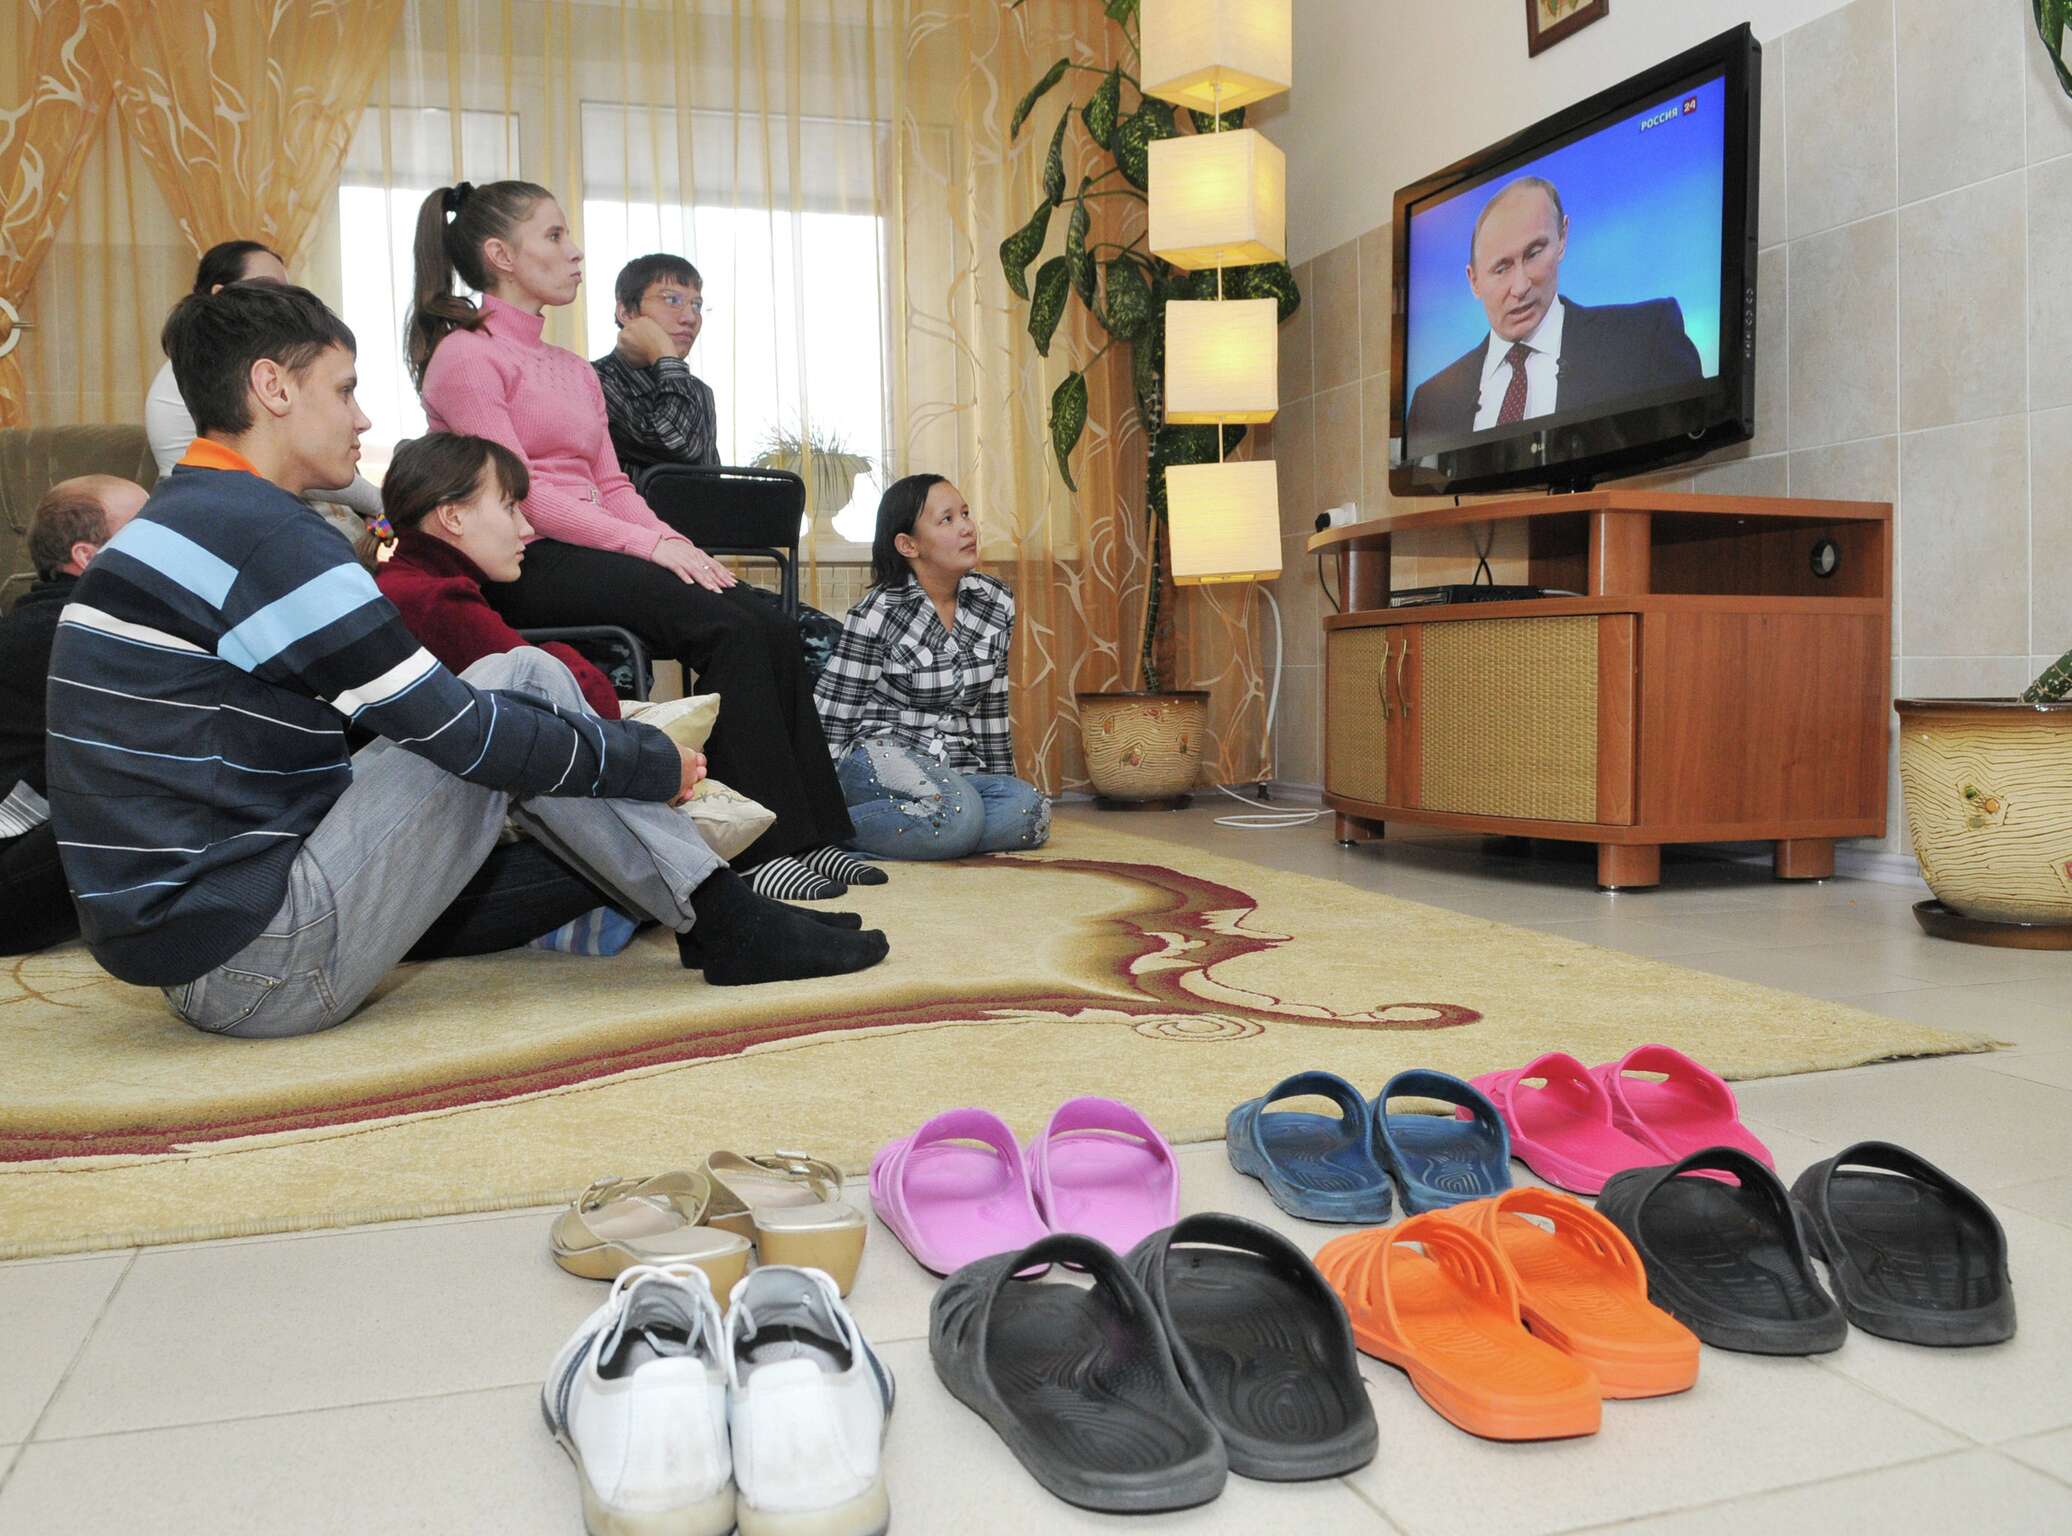 Показать что показывают по телевизору сегодня. Семья у телевизора. Российская семья у телевизора. Семья смотрит телевизор. Россияне у телевизора.